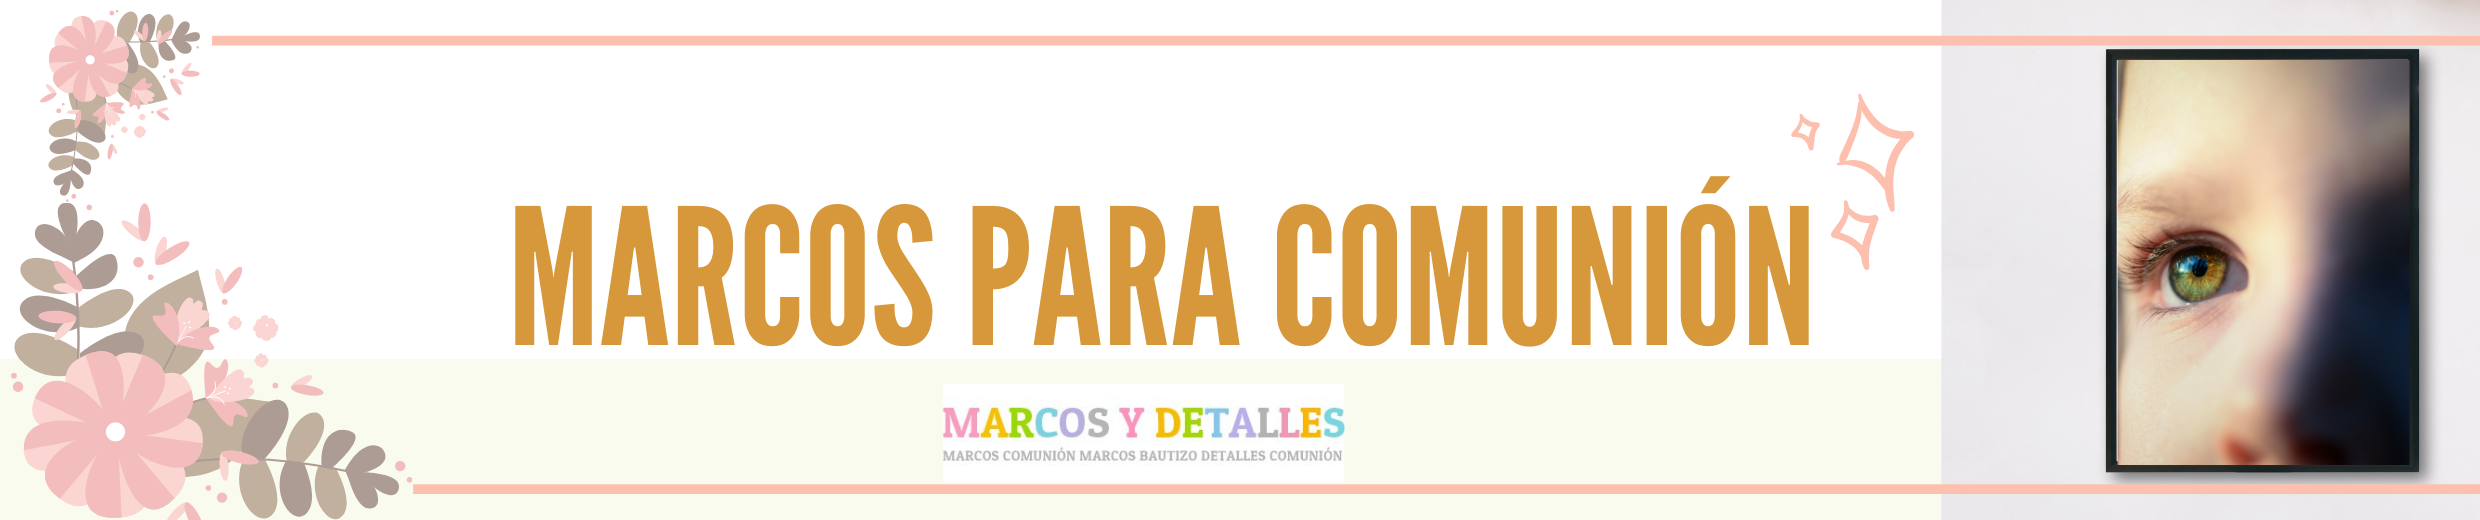 MARCOS COMUNIÓN Marcosydetalles.es